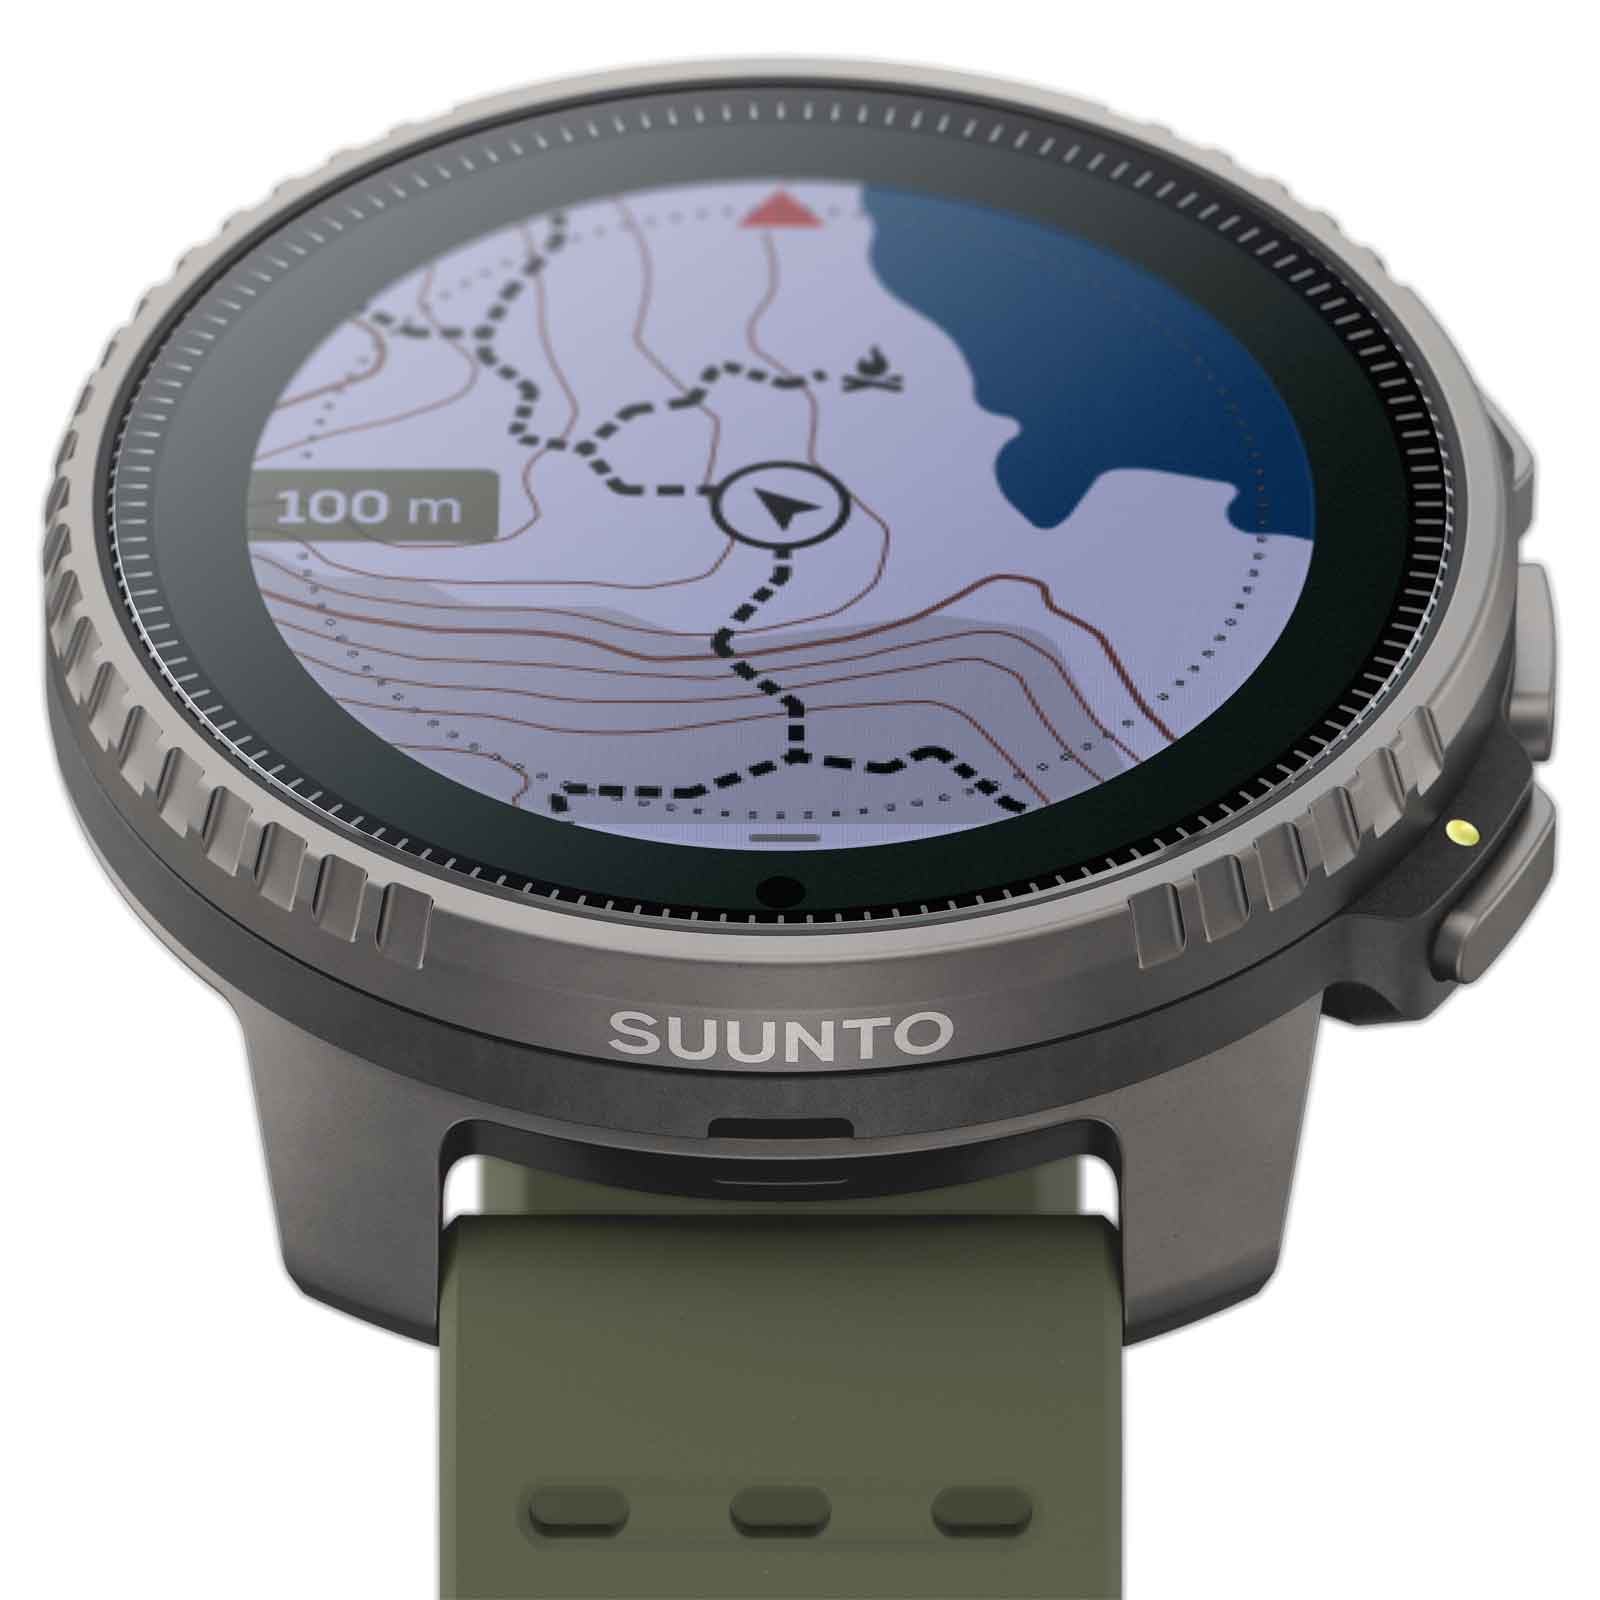 Suunto Vertical : une montre GPS outdoor à l'autonomie imbattable